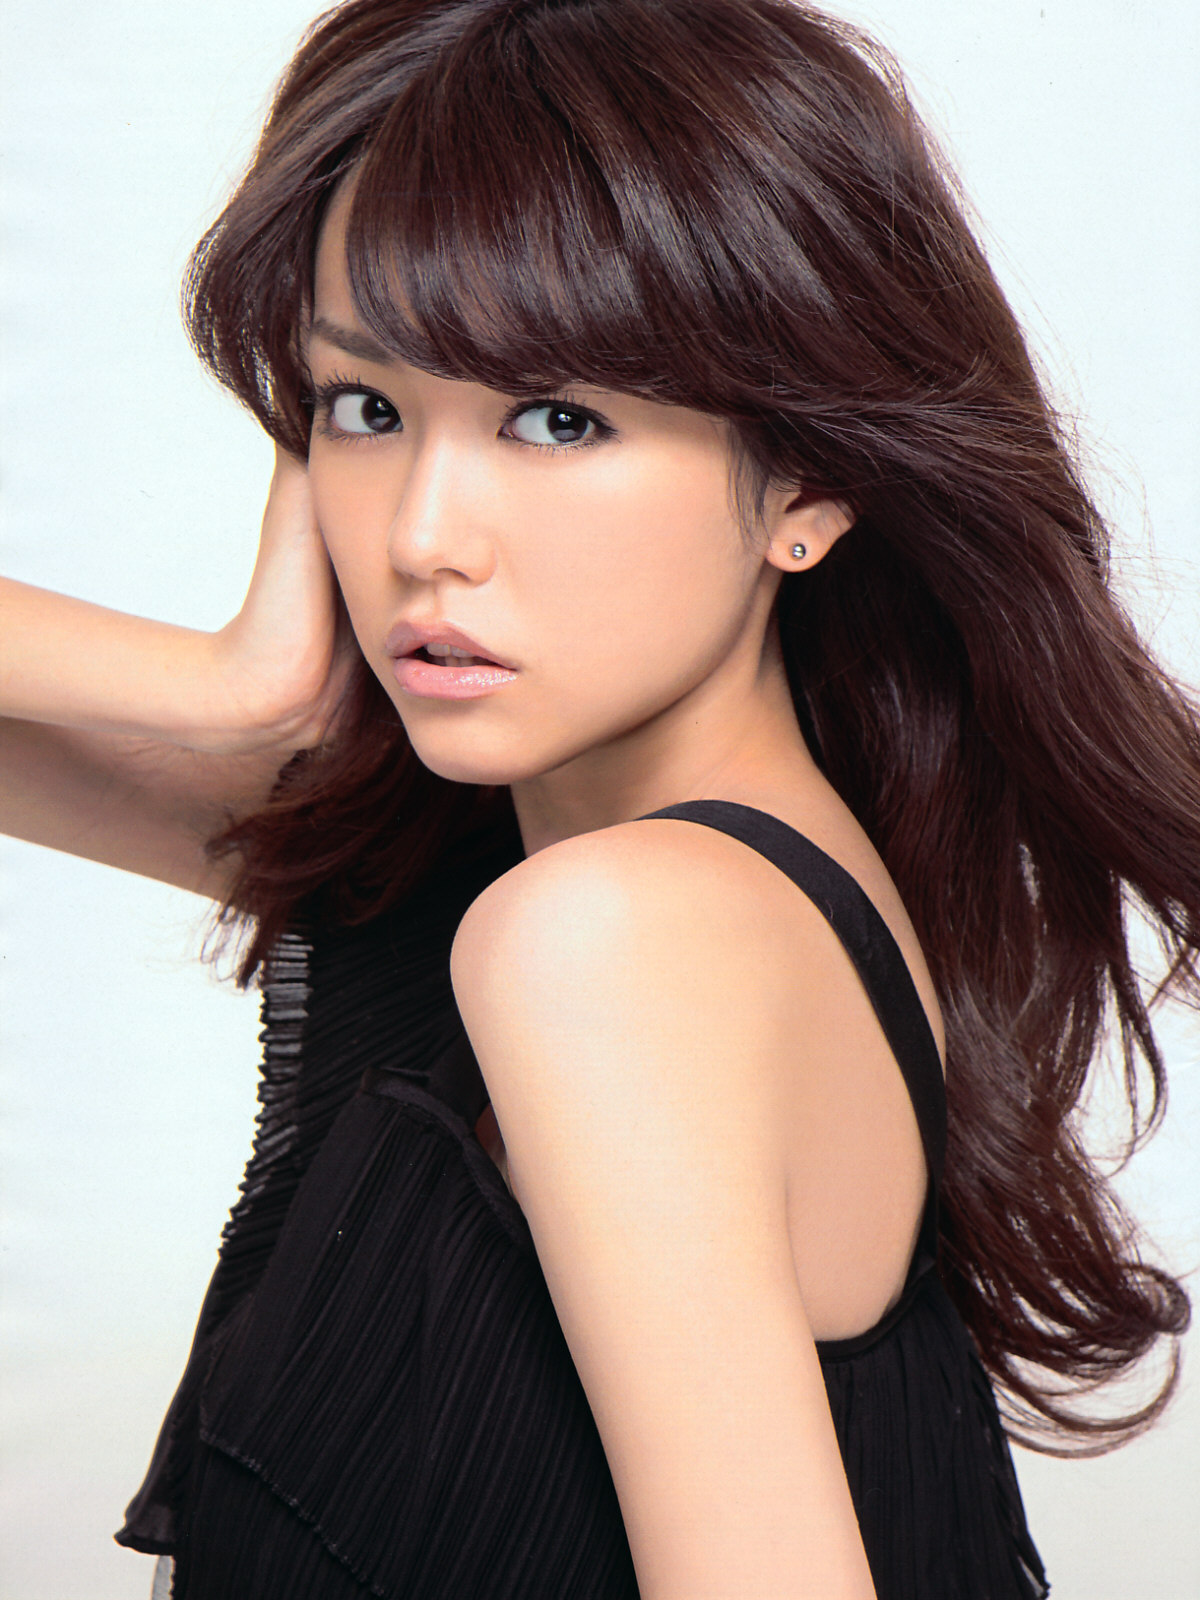 美女 アジア女性の美人ランキングtop29 かわいい 最新版 Aikru アイクル かわいい女の子の情報まとめサイト